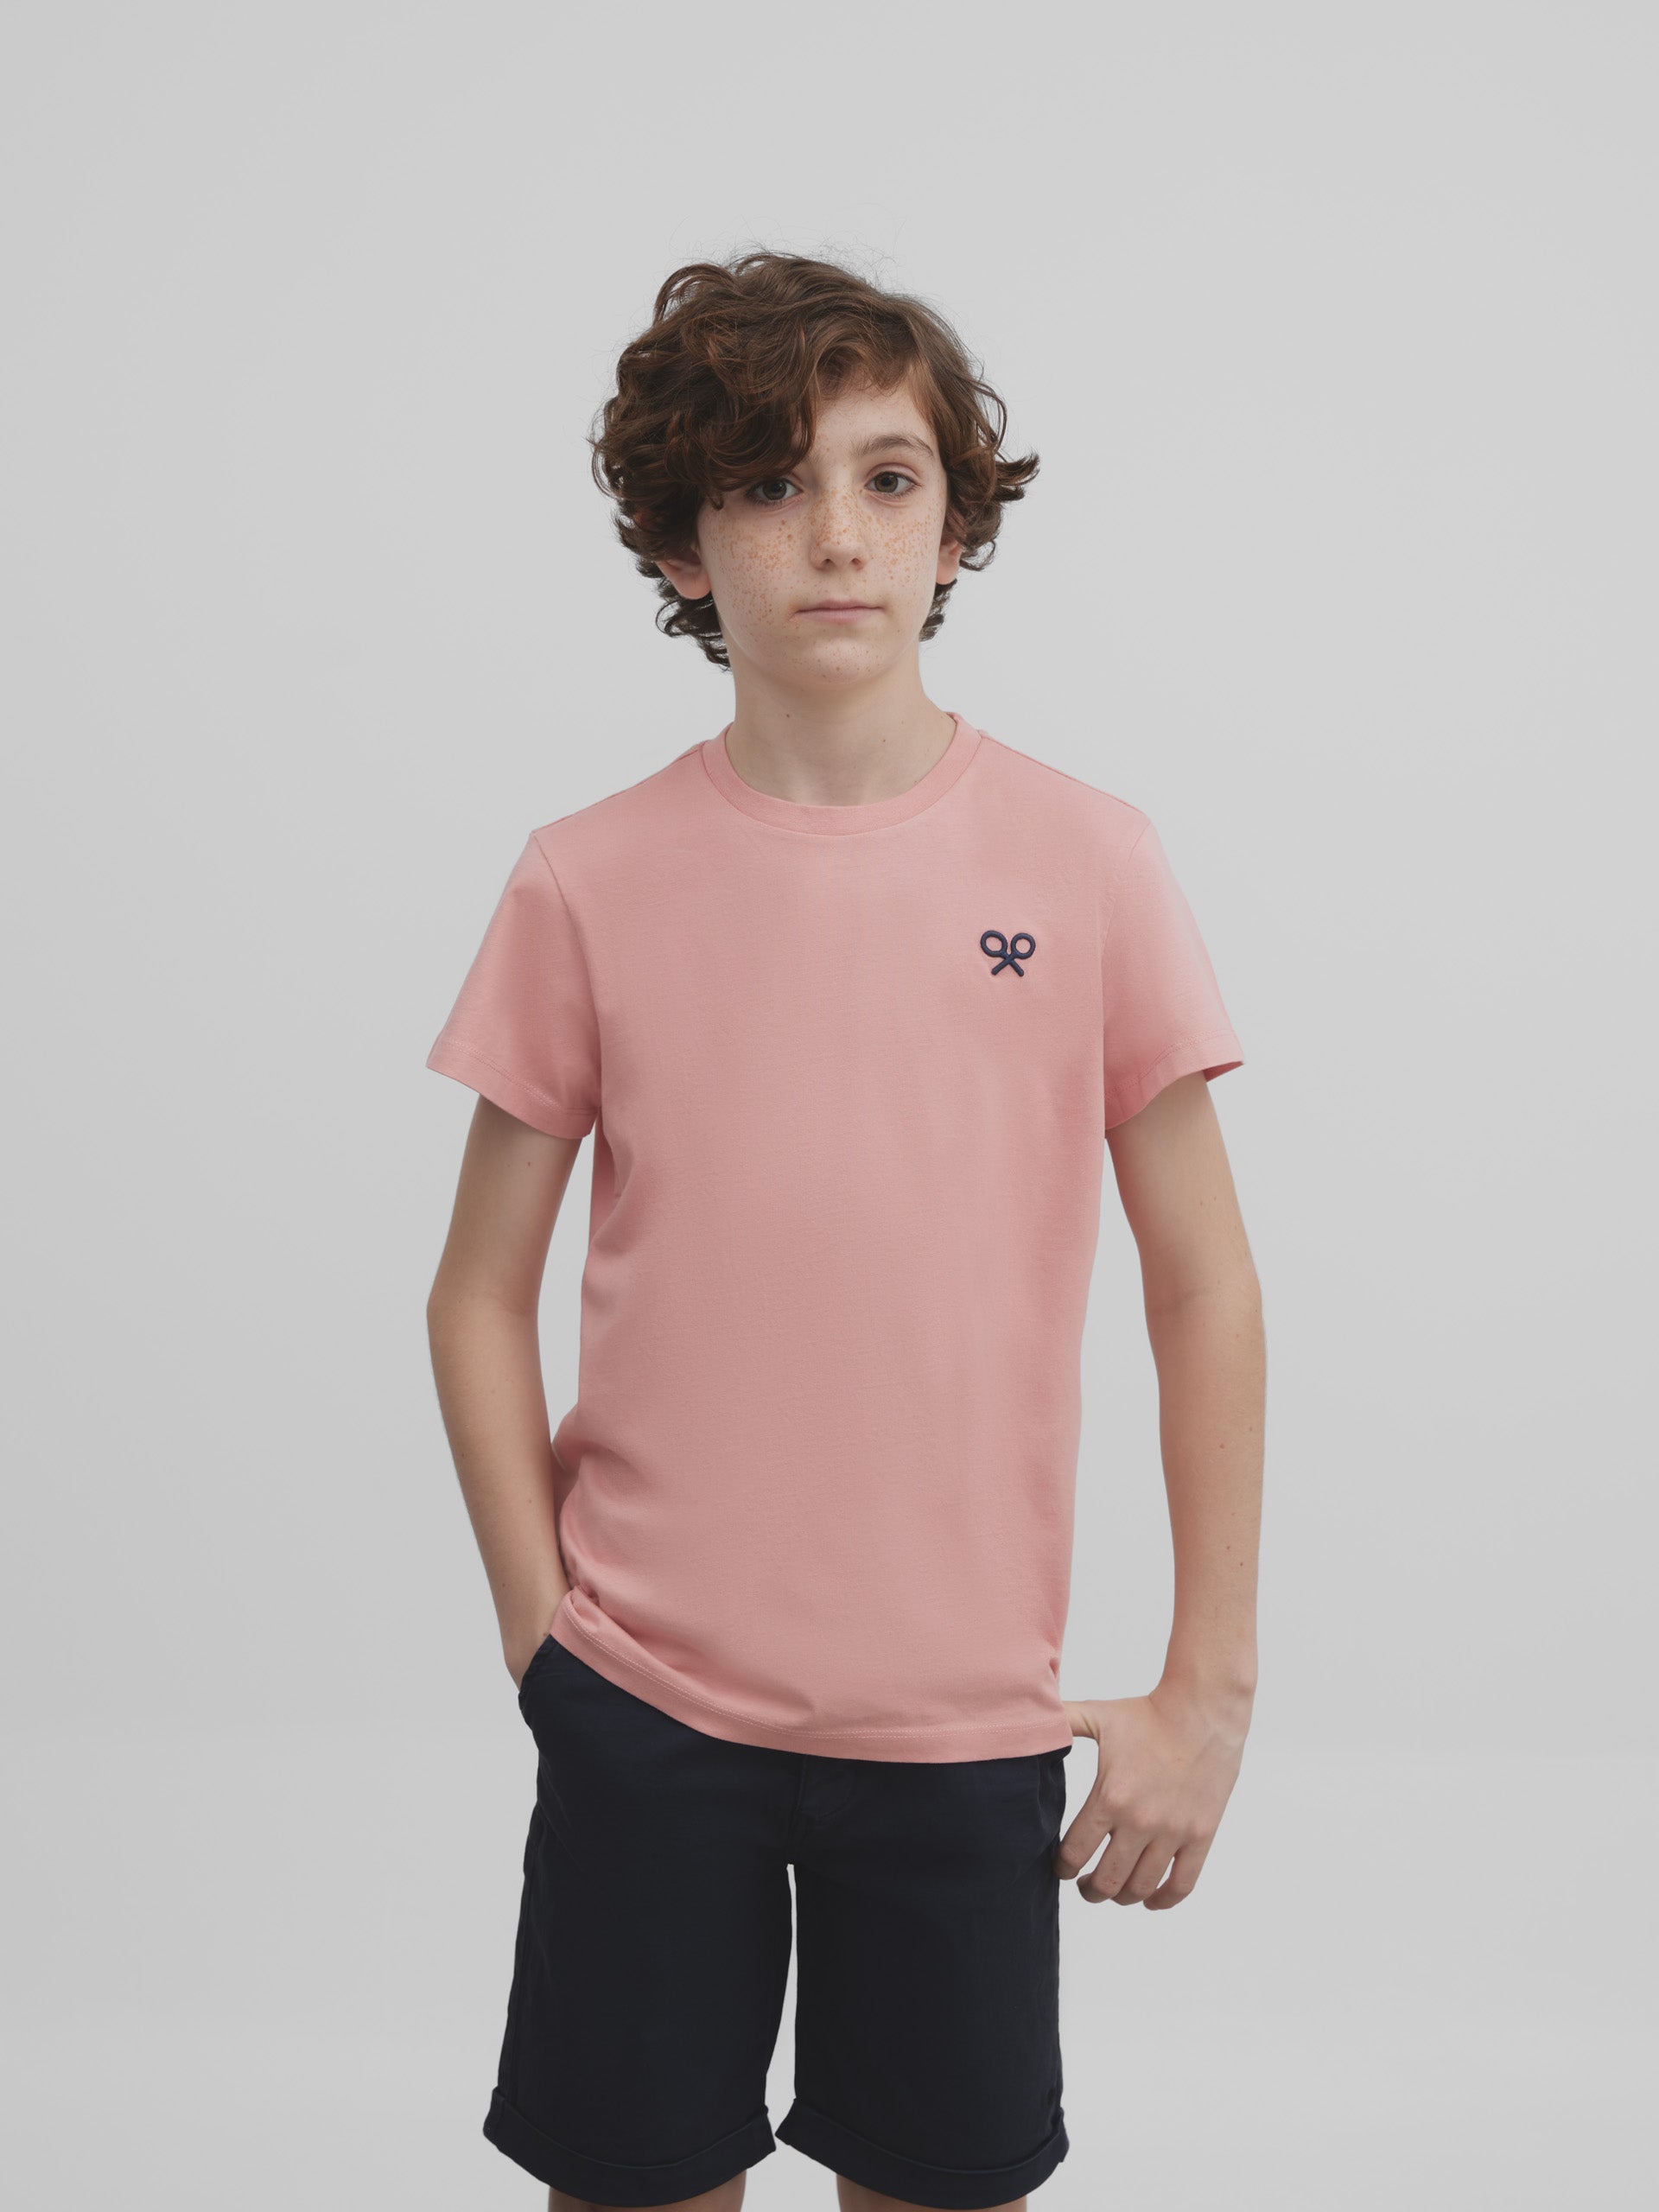 T-shirt enfant regardons le coucher de soleil rose